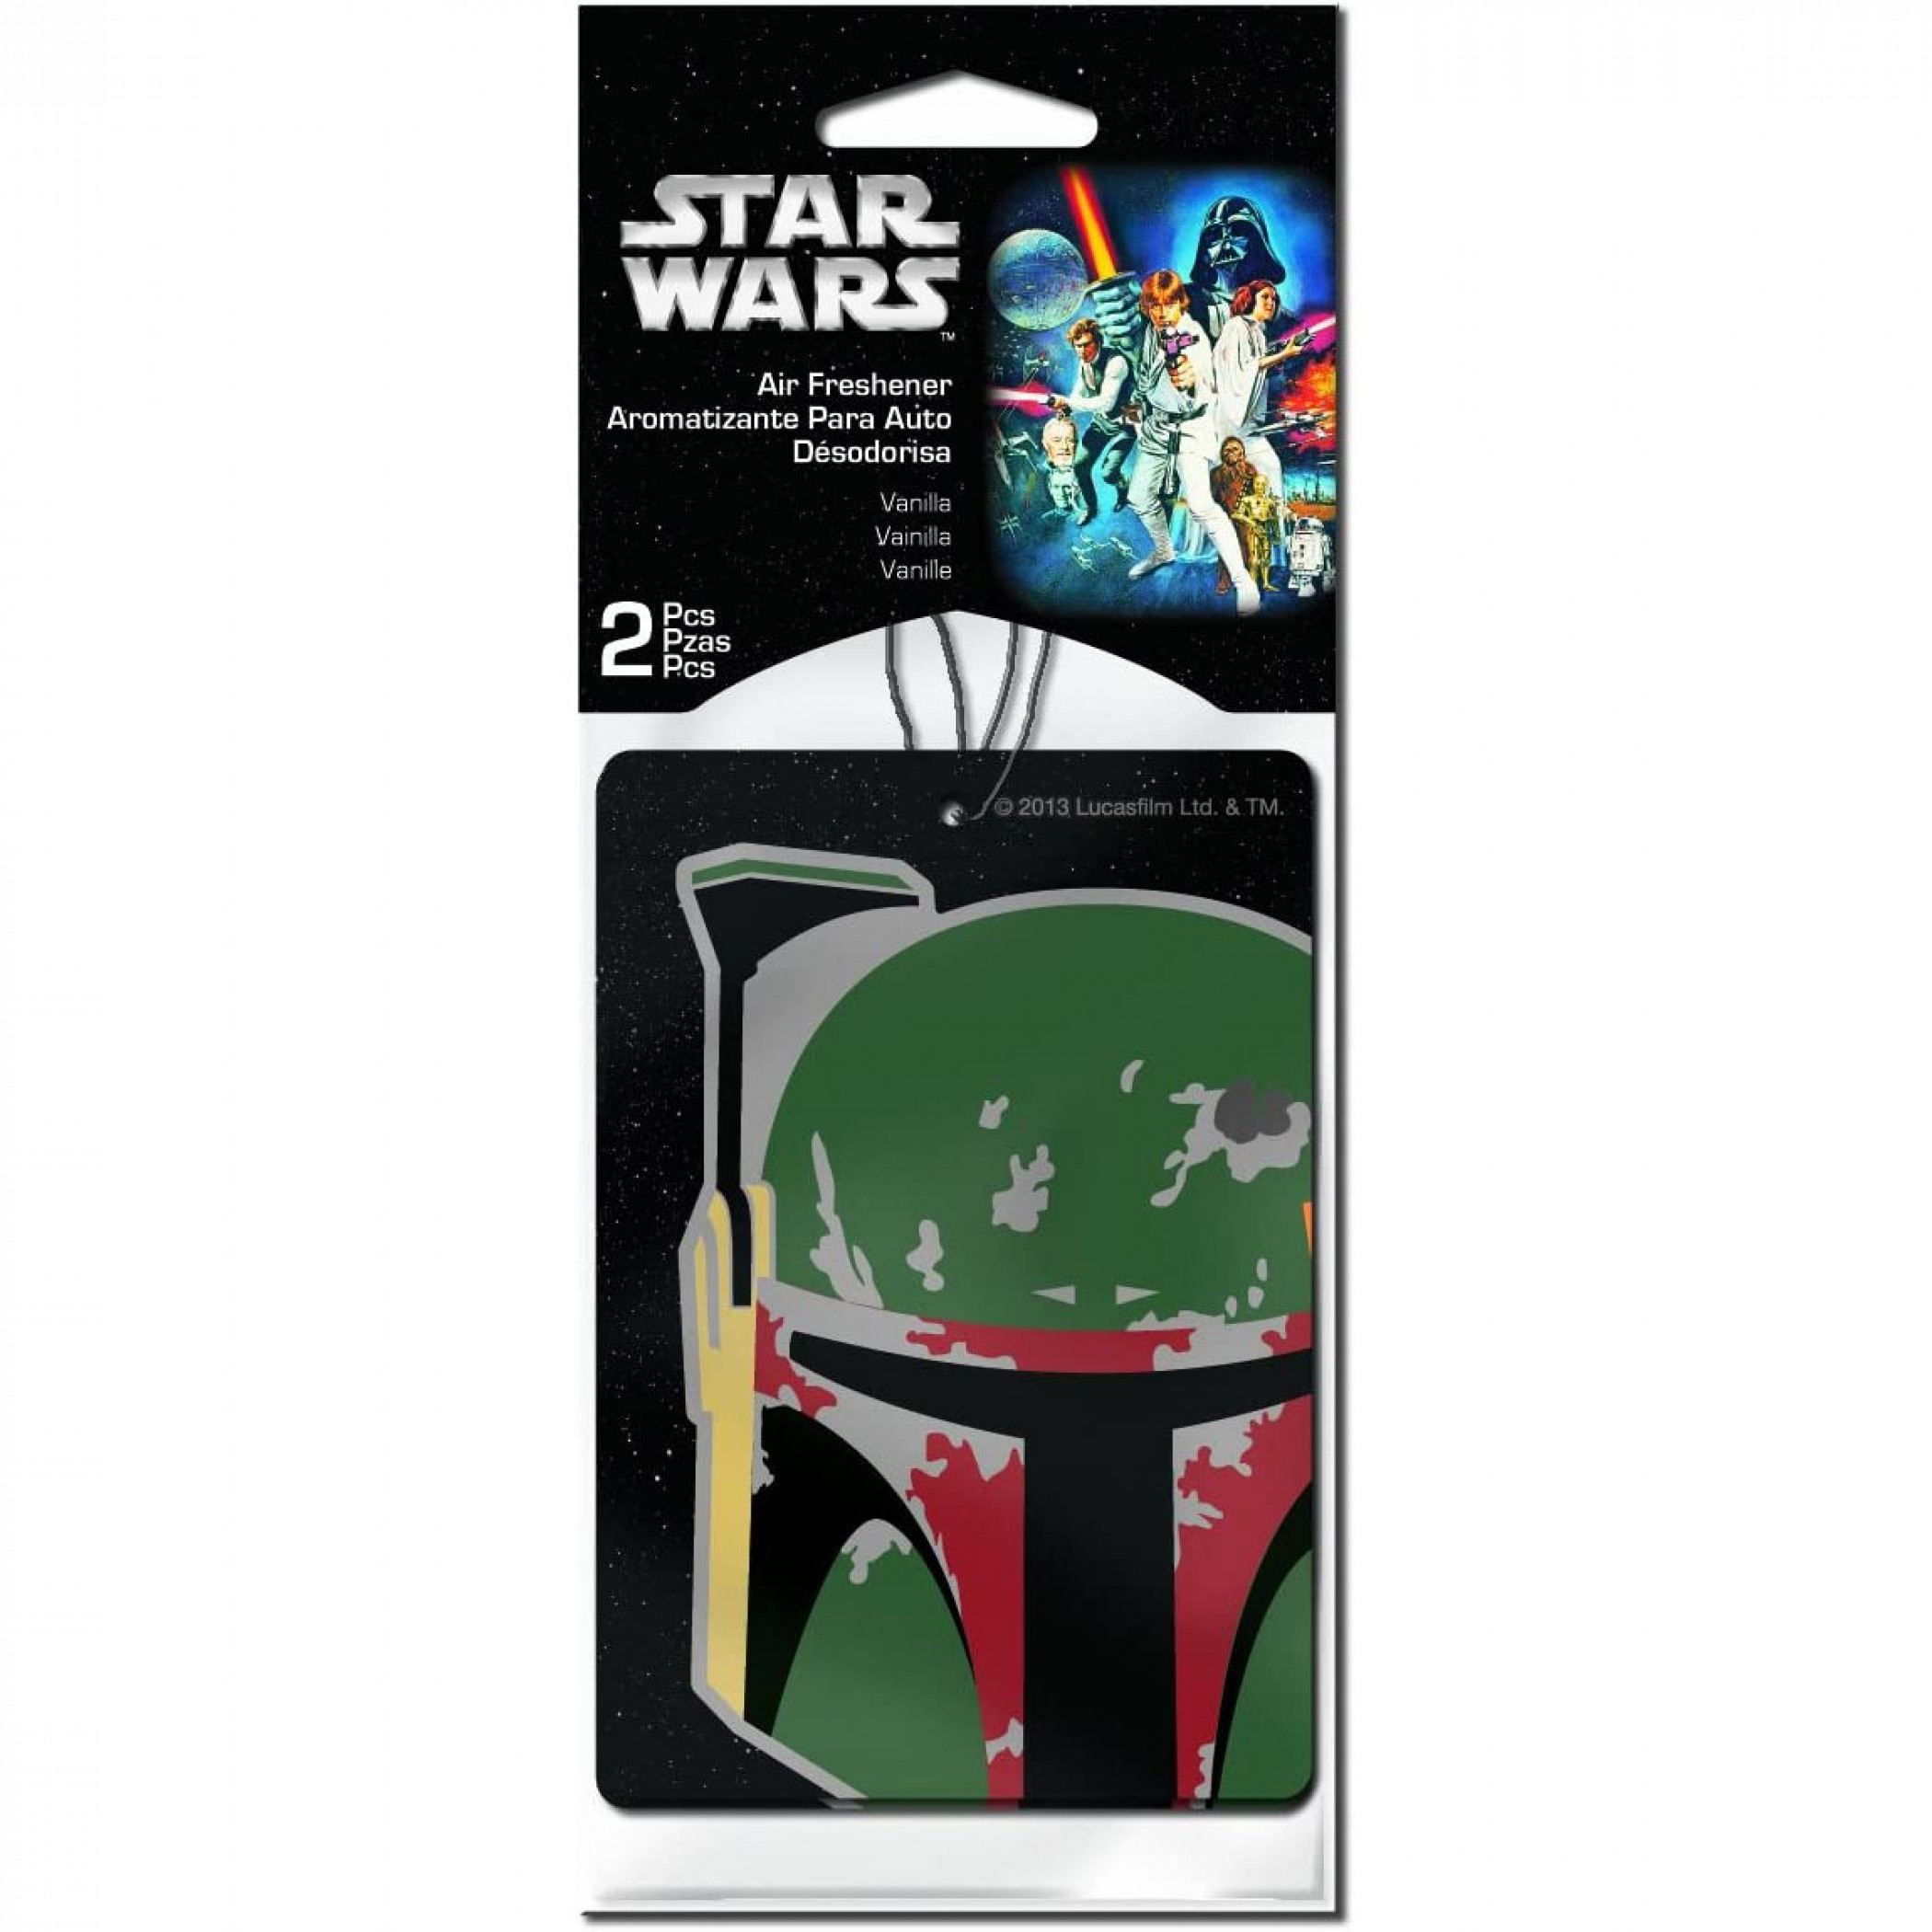 Star Wars Boba Fett Air Freshener 2-Pack